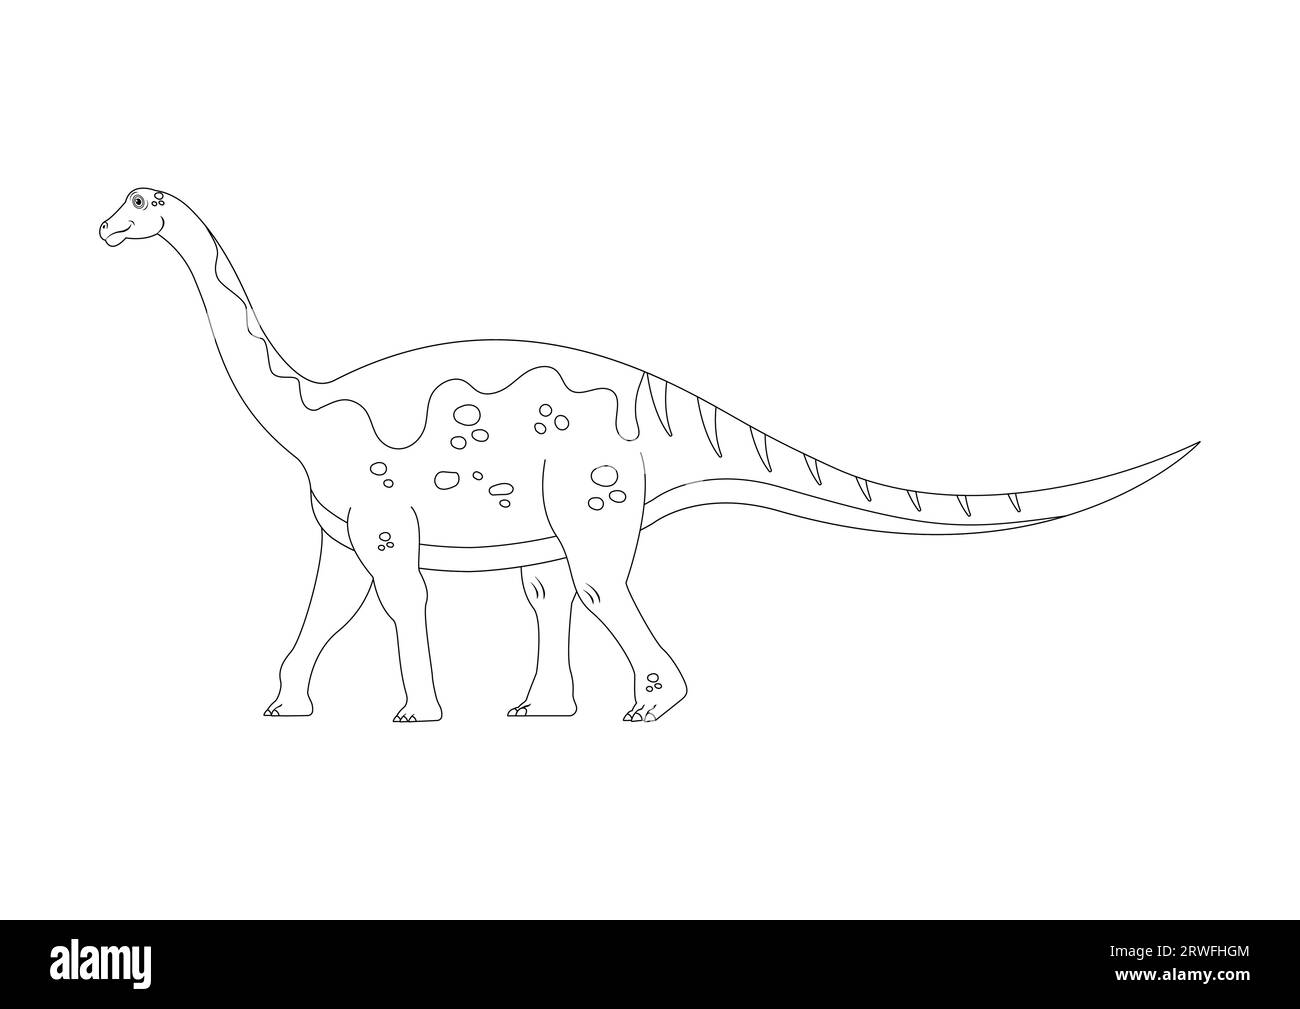 Schwarz-weiß Lirainosaurus Dinosaurier Zeichentrickfigur Vektor. Malseite eines Lirainosaurus-Dinosauriers Stock Vektor